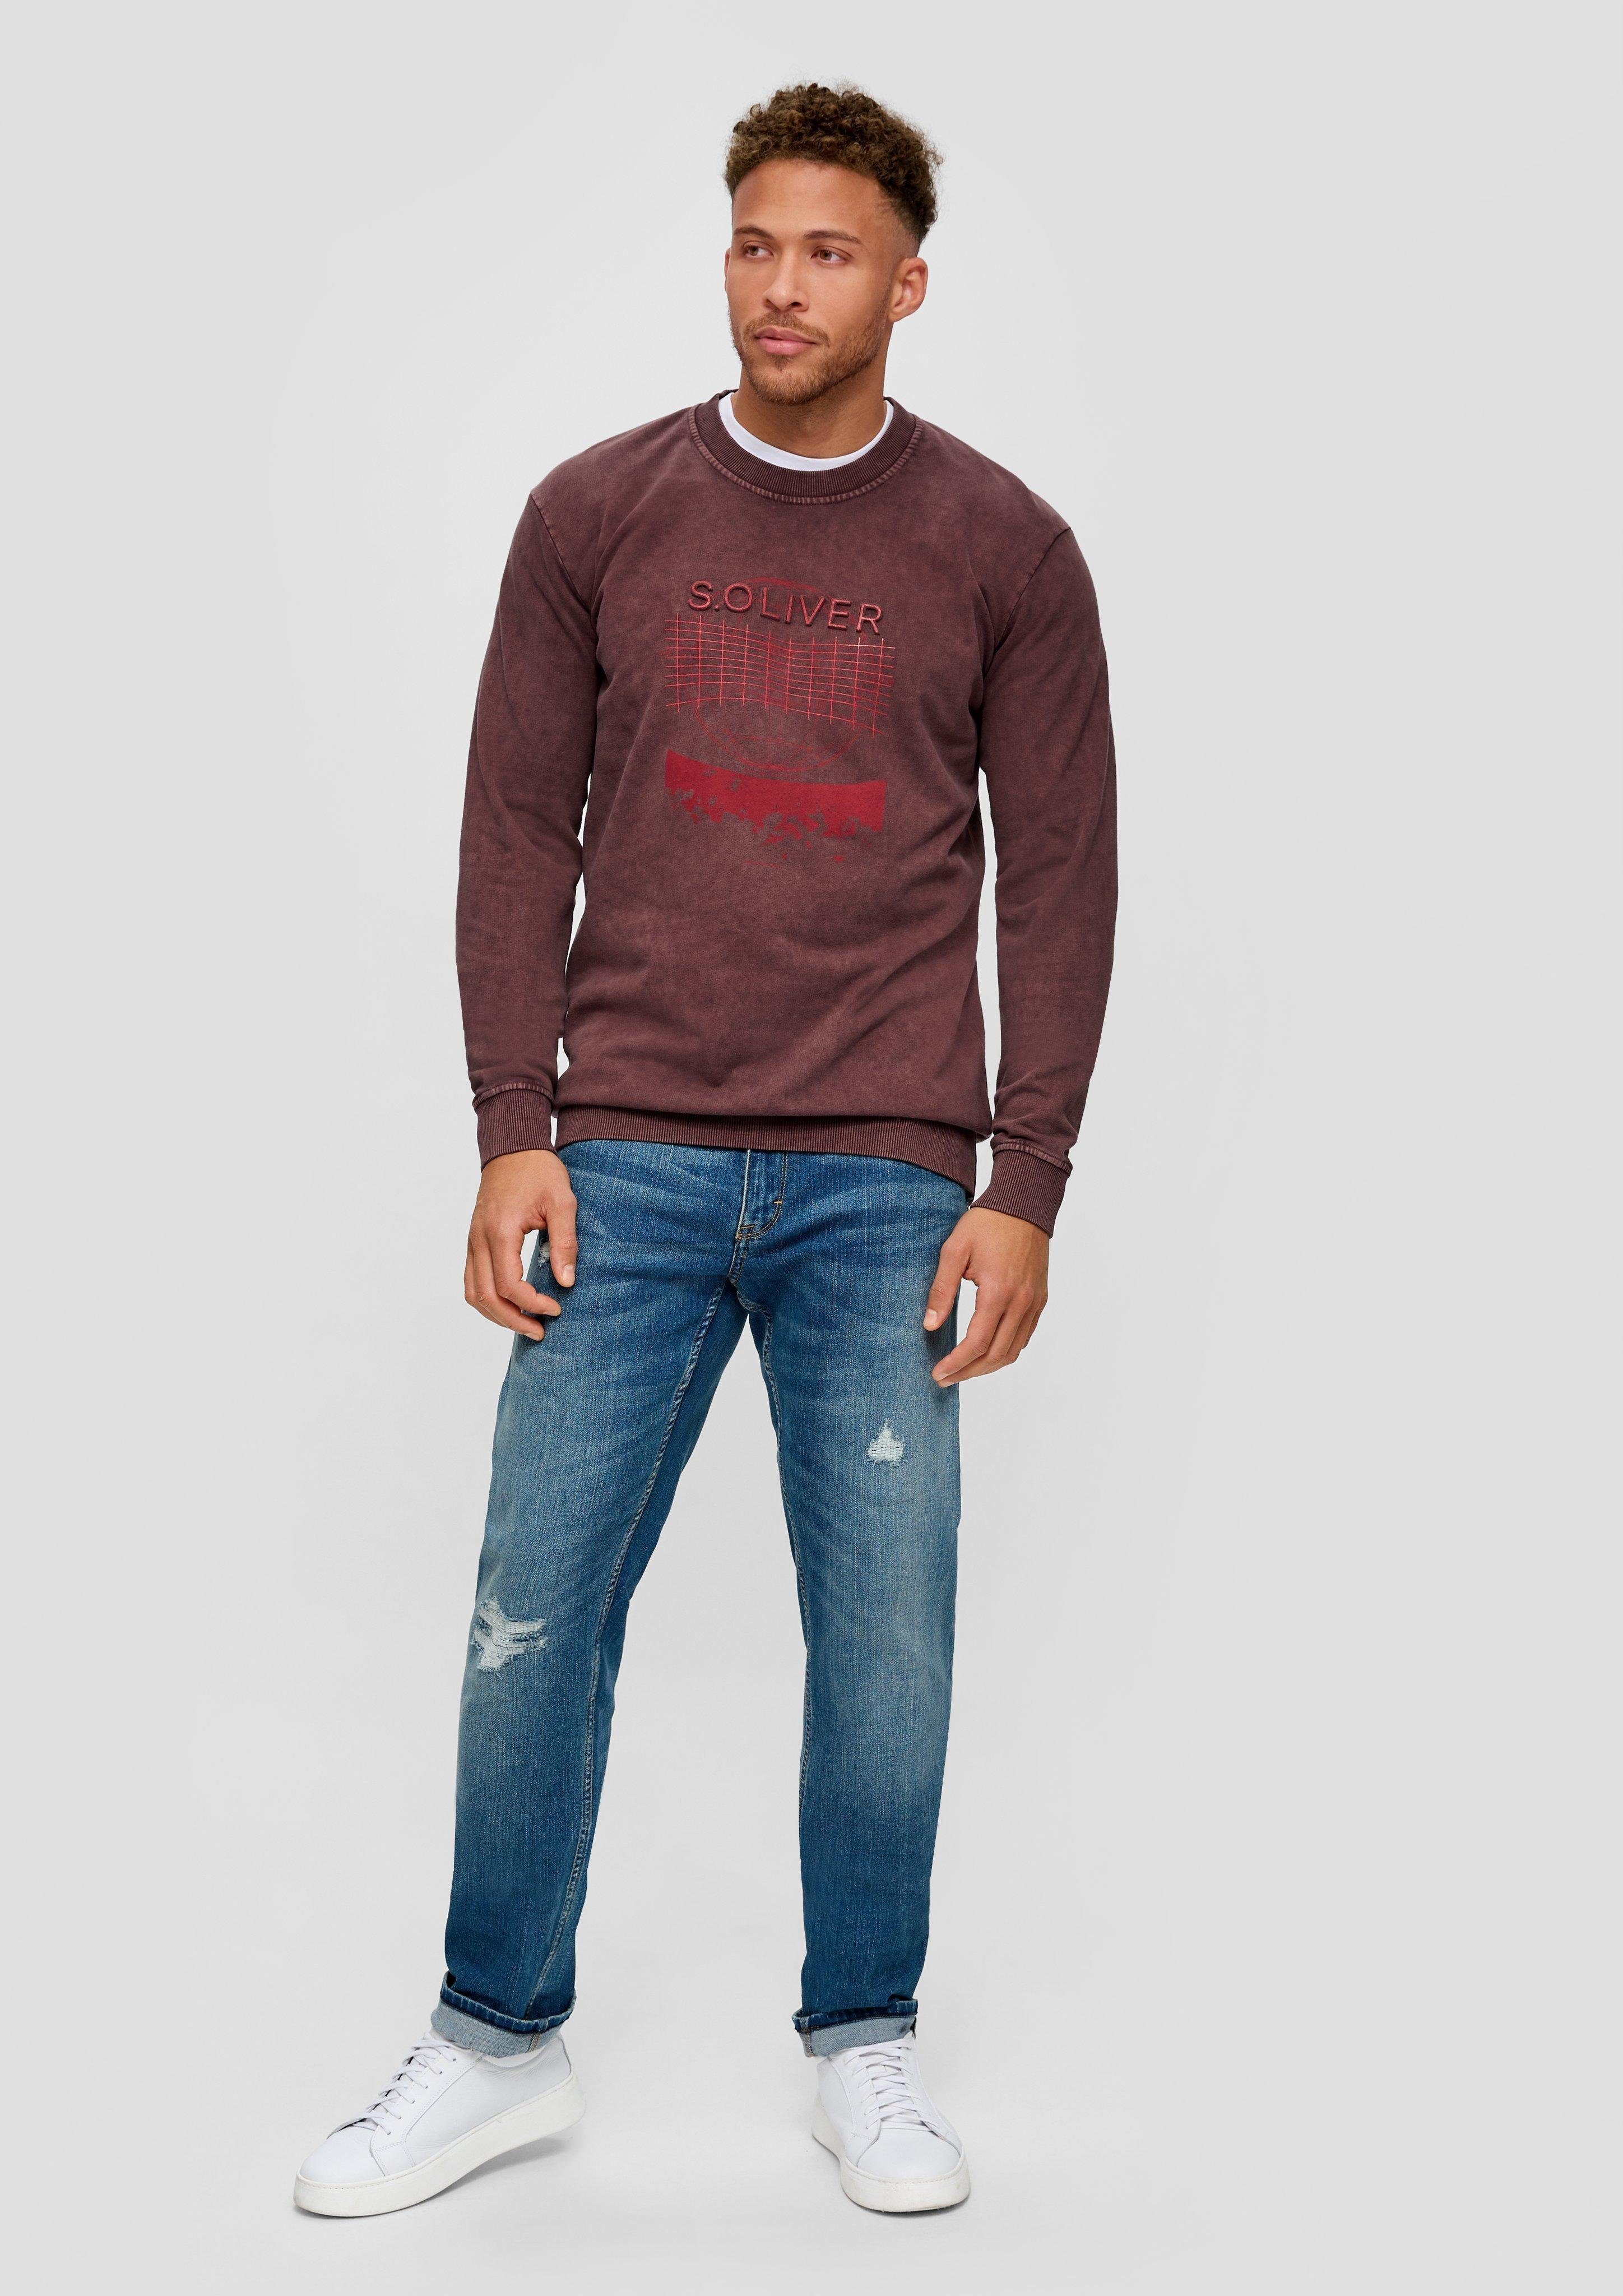 s.Oliver Sweatshirt Sweatshirt mit Ärmel hat Rippbündchen, Front-Print, Ärmel lange mit